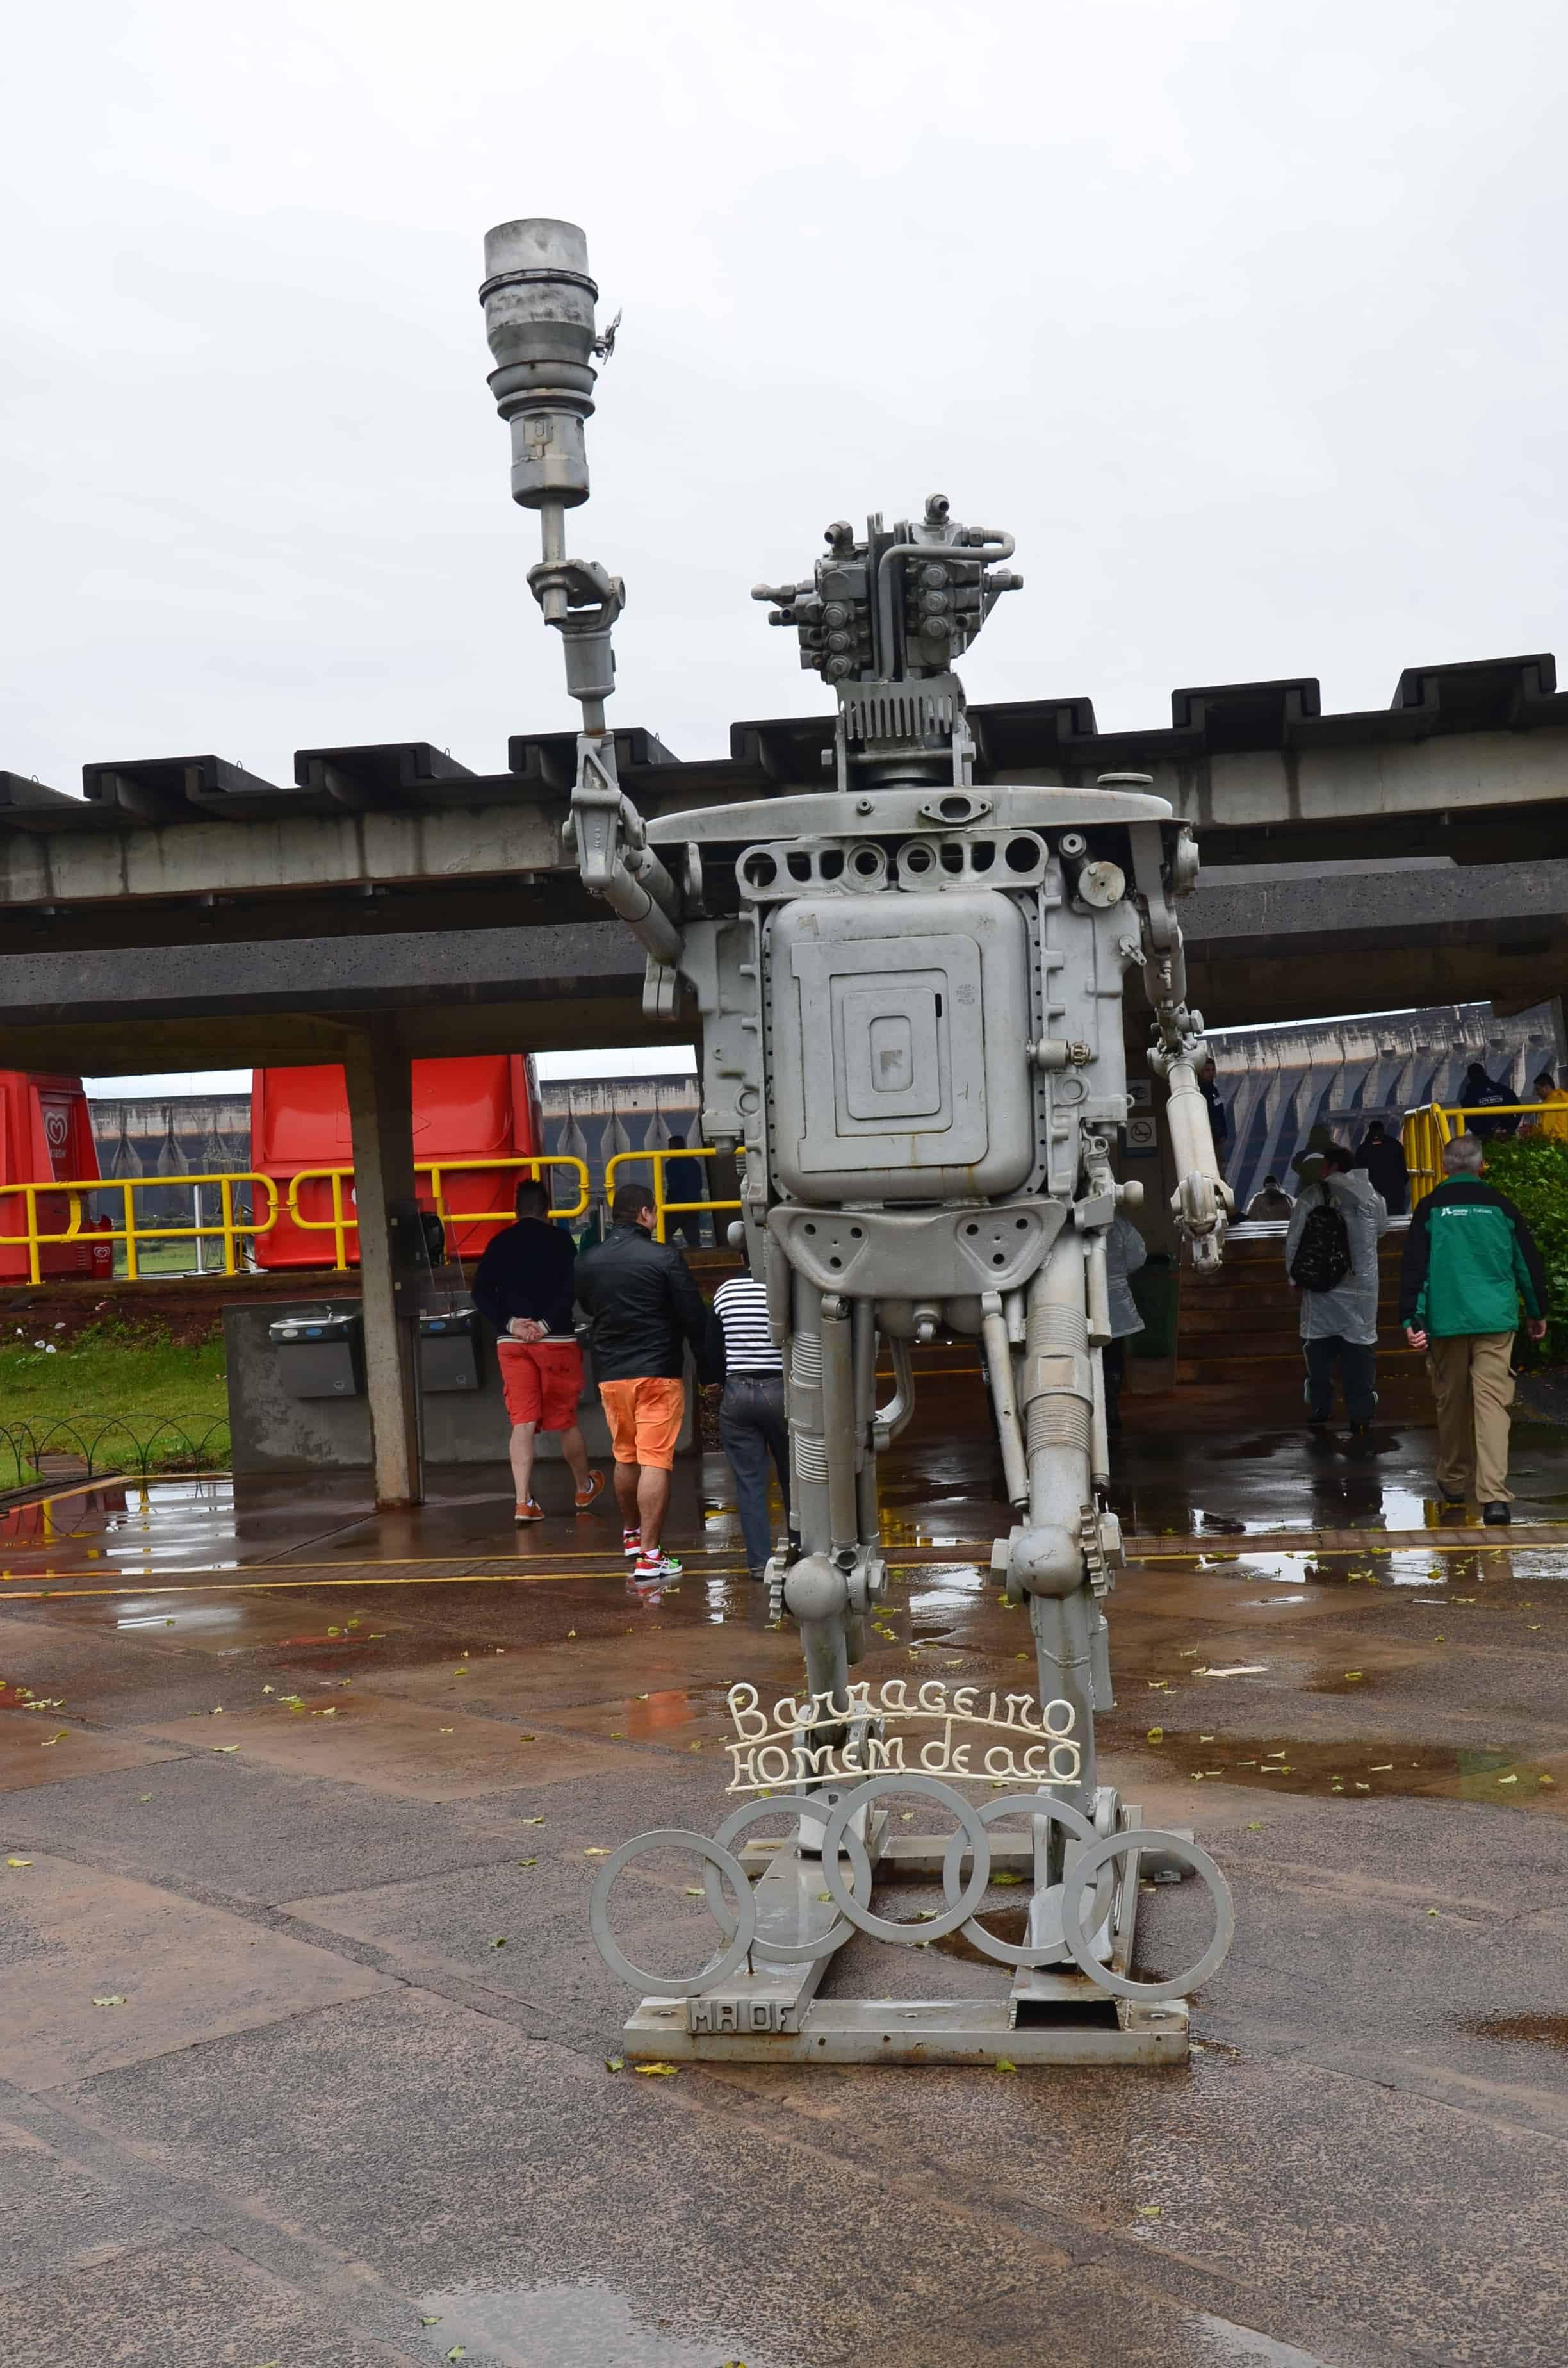 Robot sculpture at Itaipu Binacional in Foz do Iguaçu, Brazil